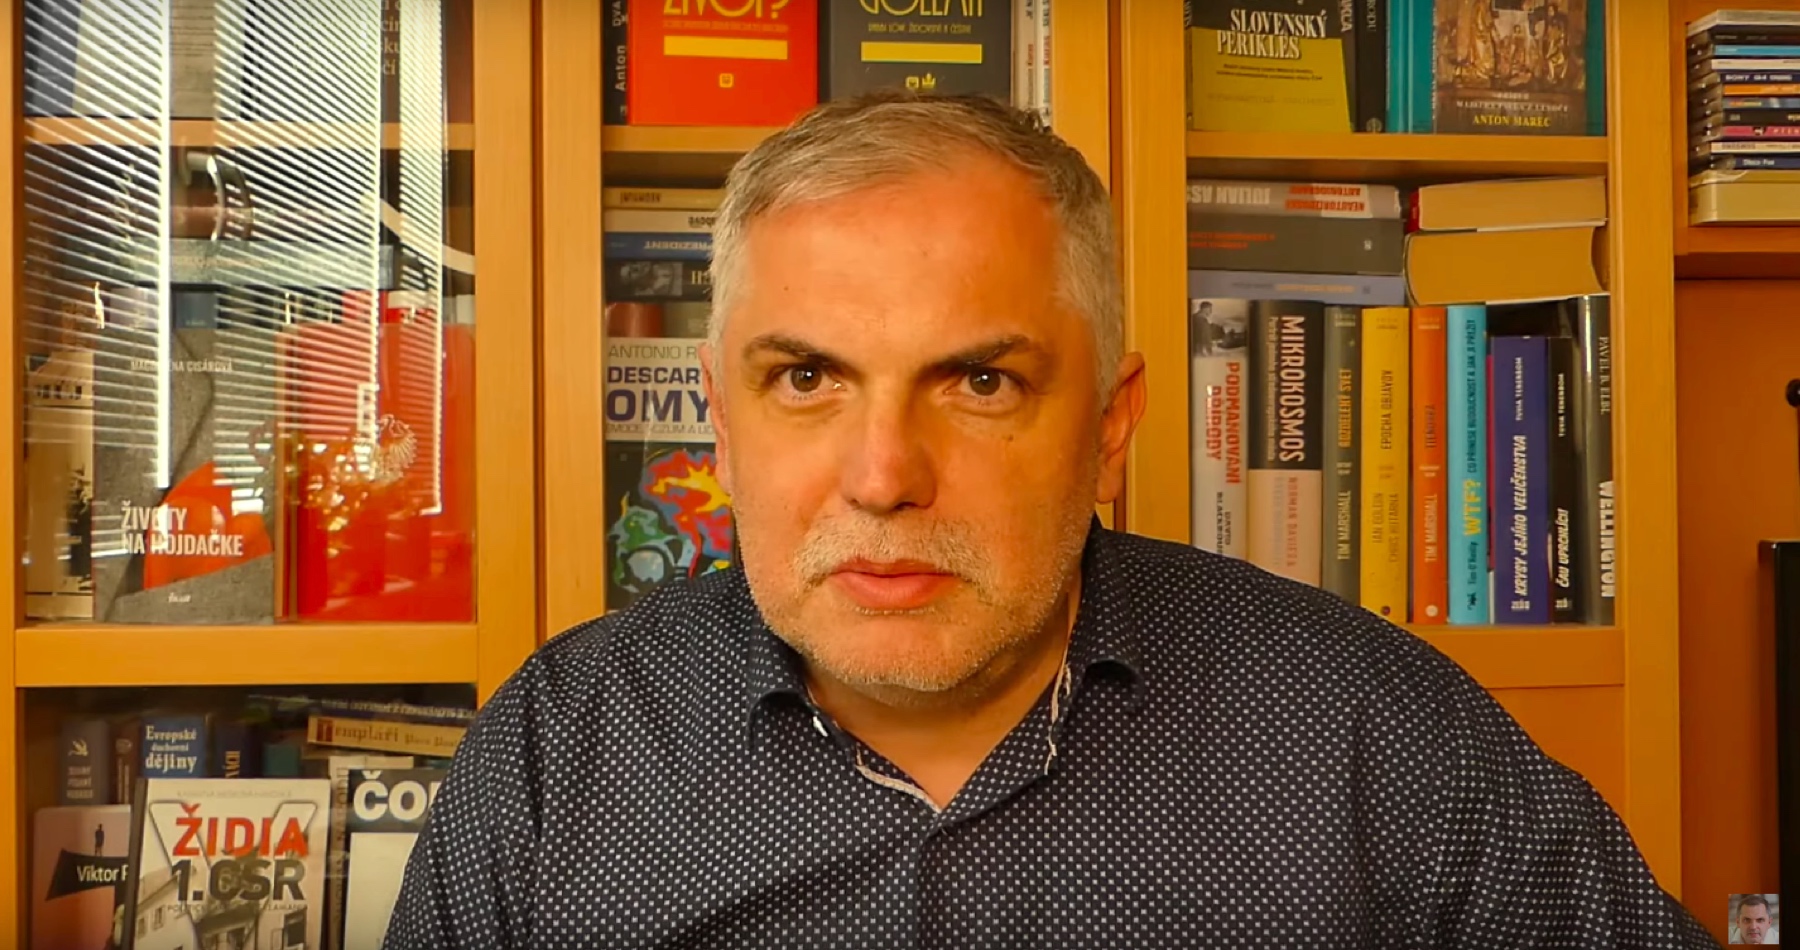 VIDEO: Michelko o Mazákovom definitívnom konci, hroziacom precedense, ktorý môže ochromiť vládnutie koalície